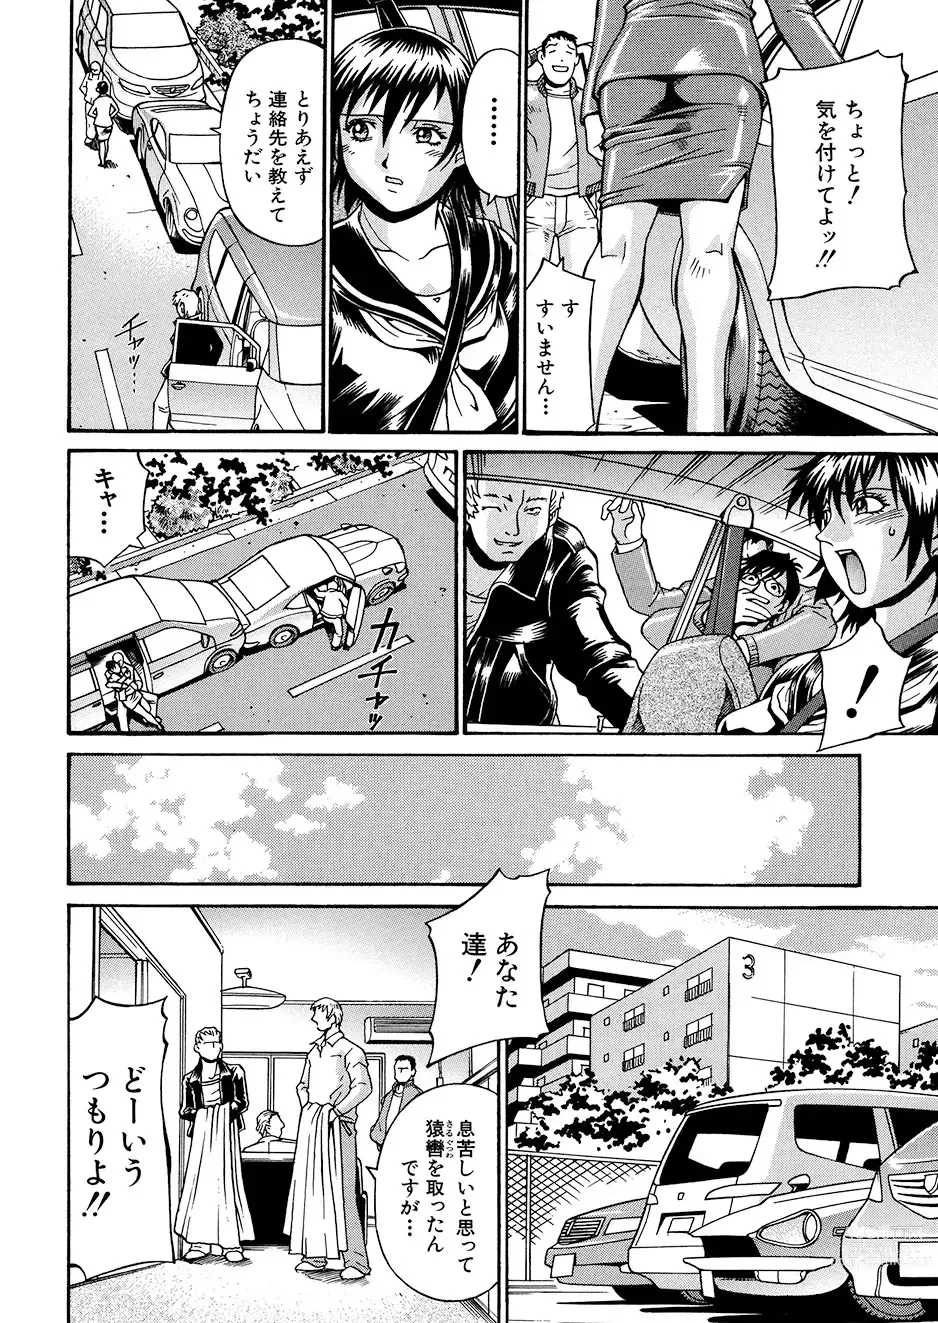 Page 29 of manga Mechiku